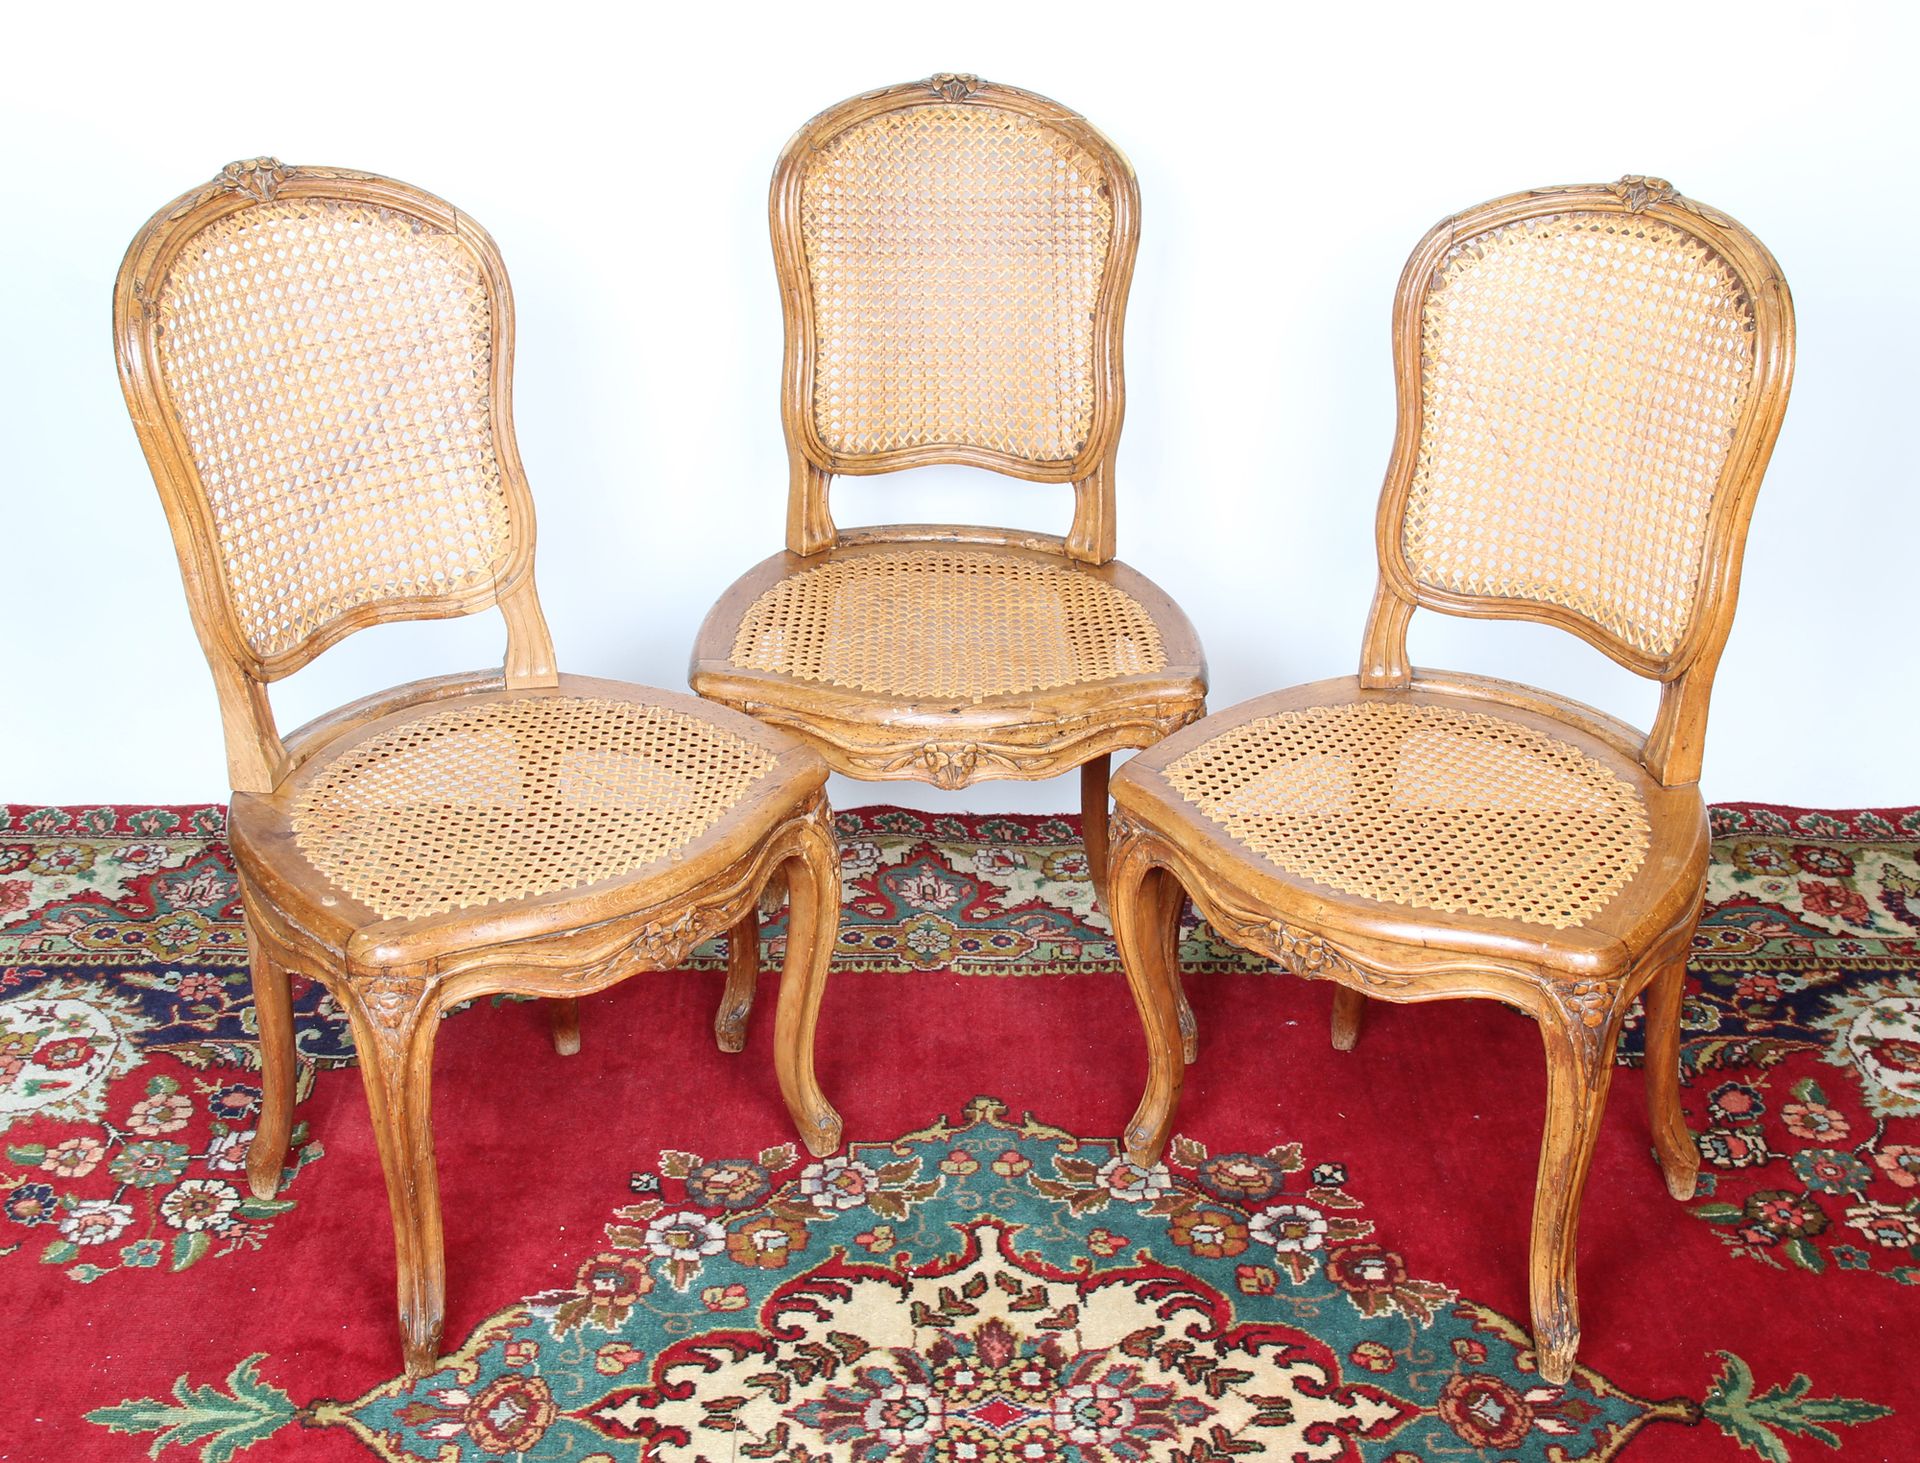 Null 三张天然木制模制和雕刻的椅子，卡布利奥式椅背上装饰着花和叶子，弯曲的椅腿以卷轴结束，椅背和椅座上有藤条。

不同的型号、 

路易十五时期

高：88&hellip;